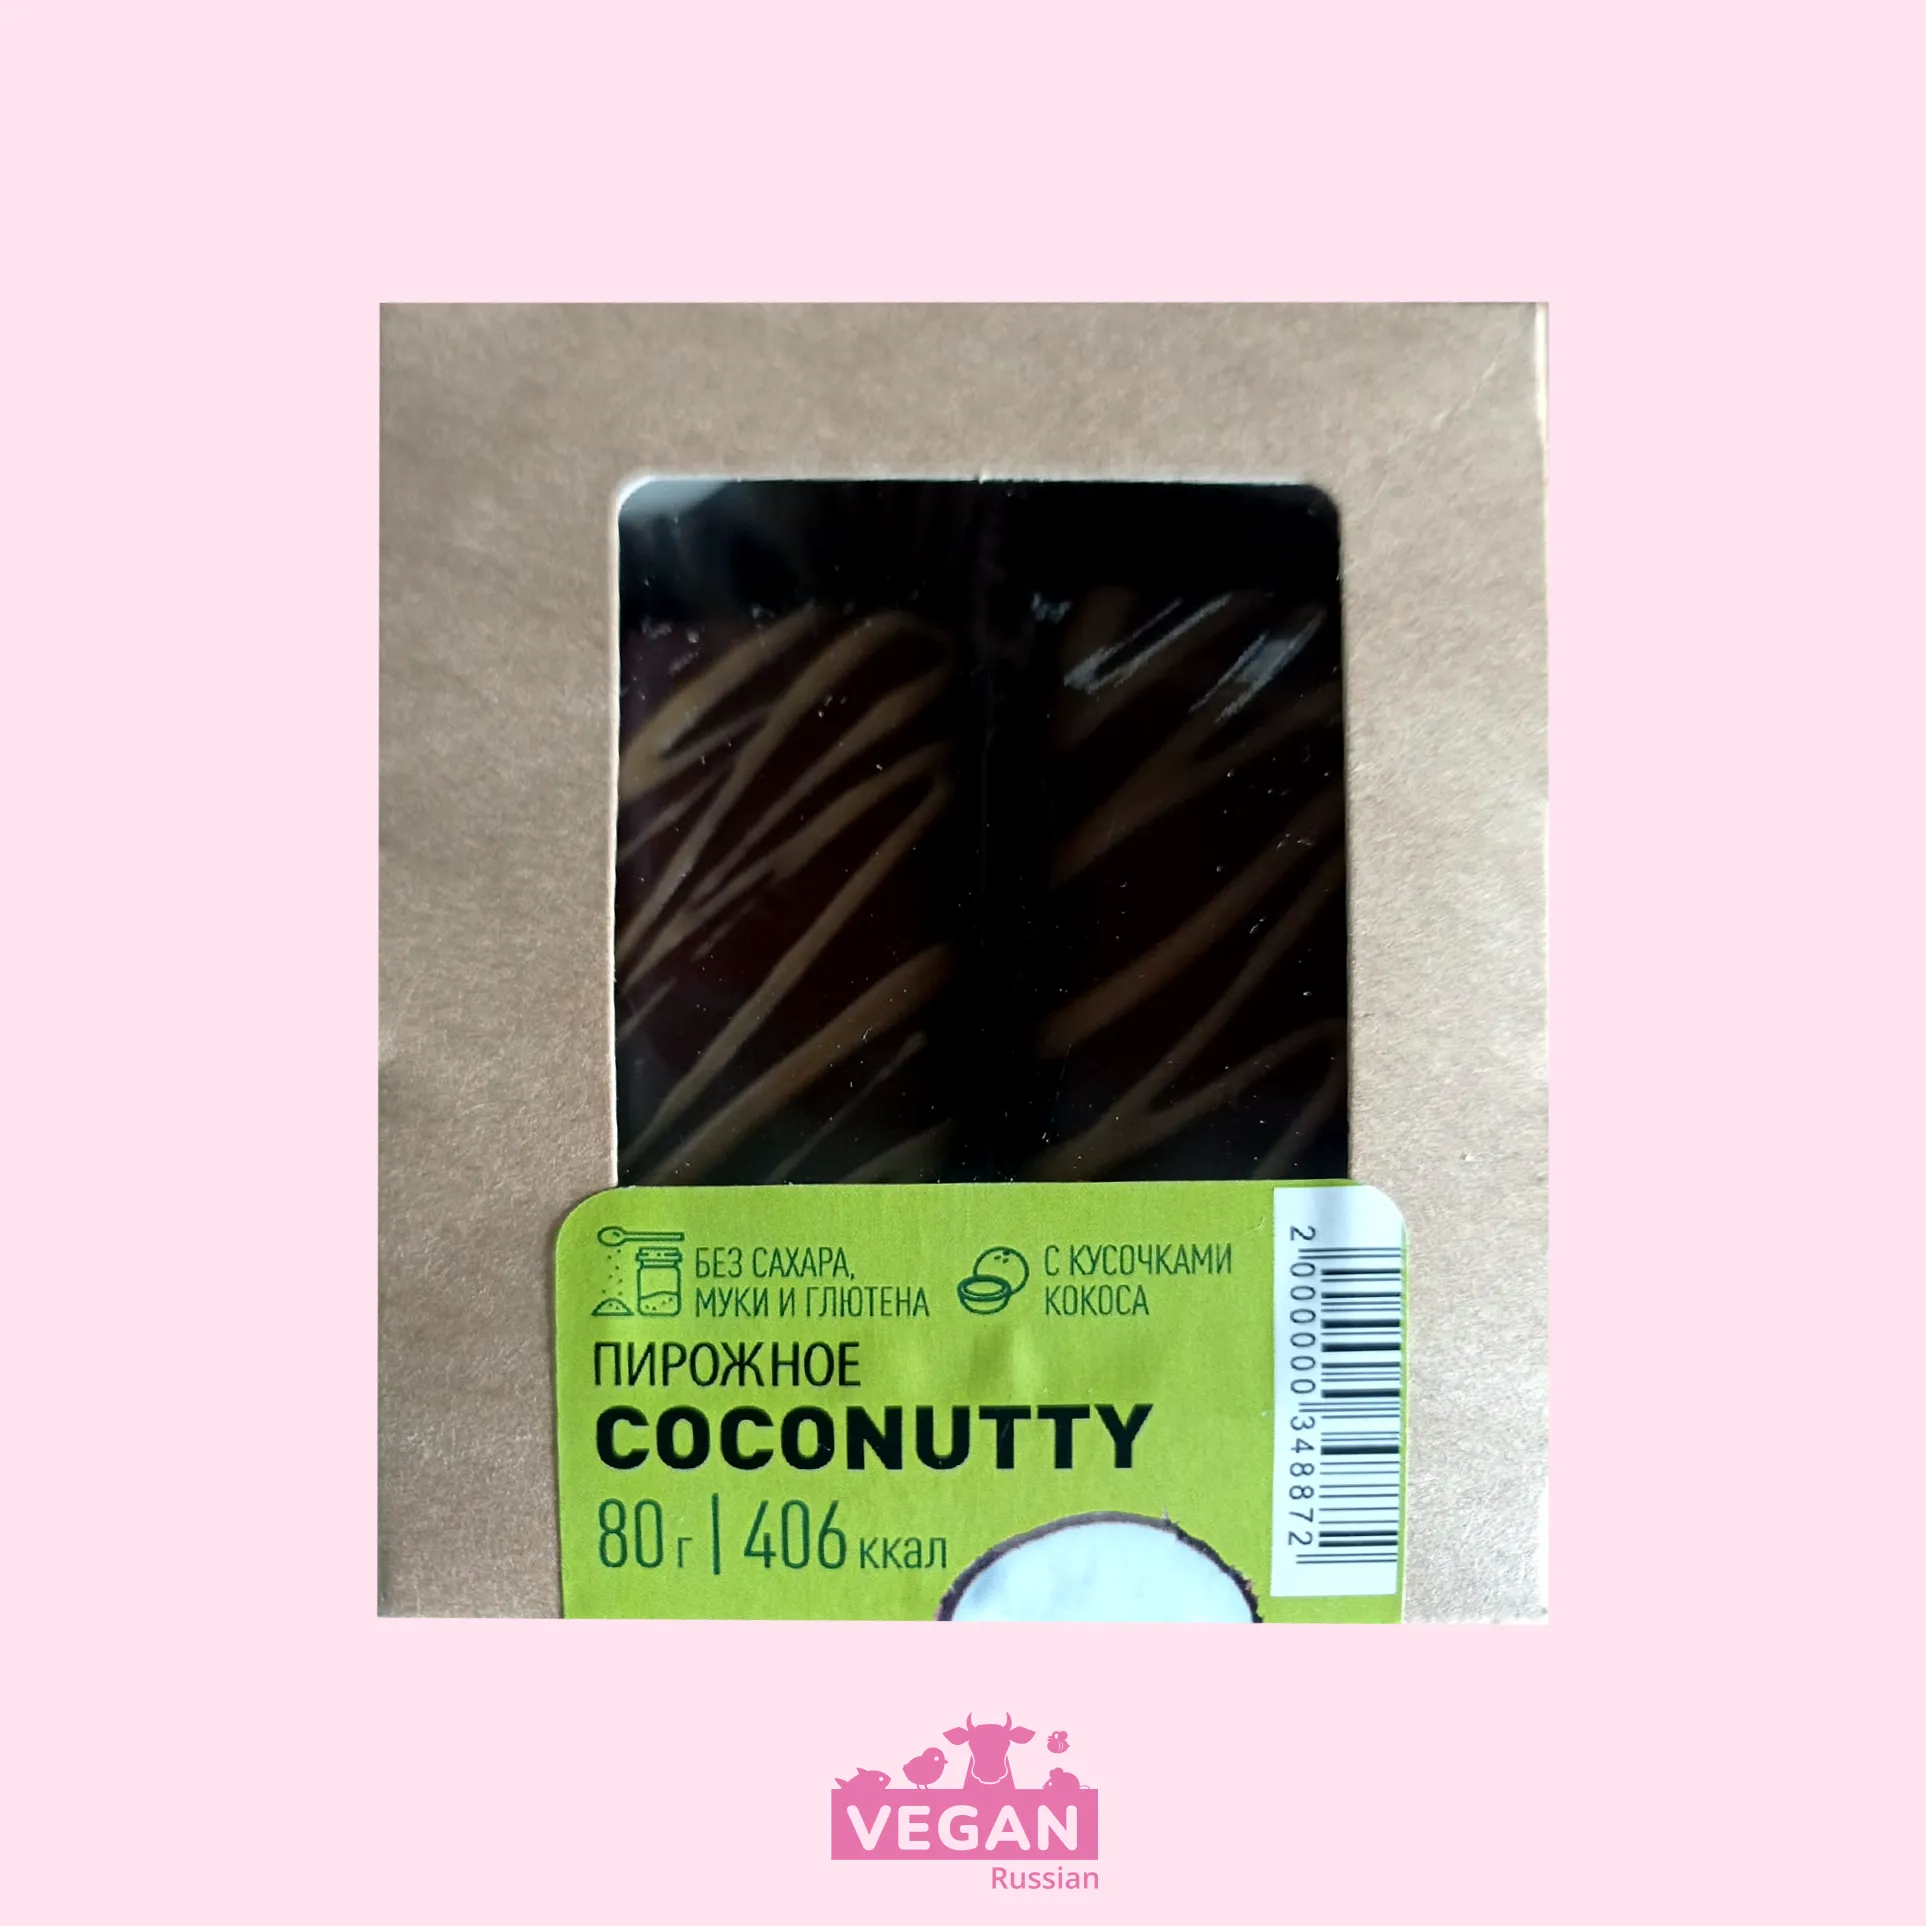 Пирожное Coconutty 80 г